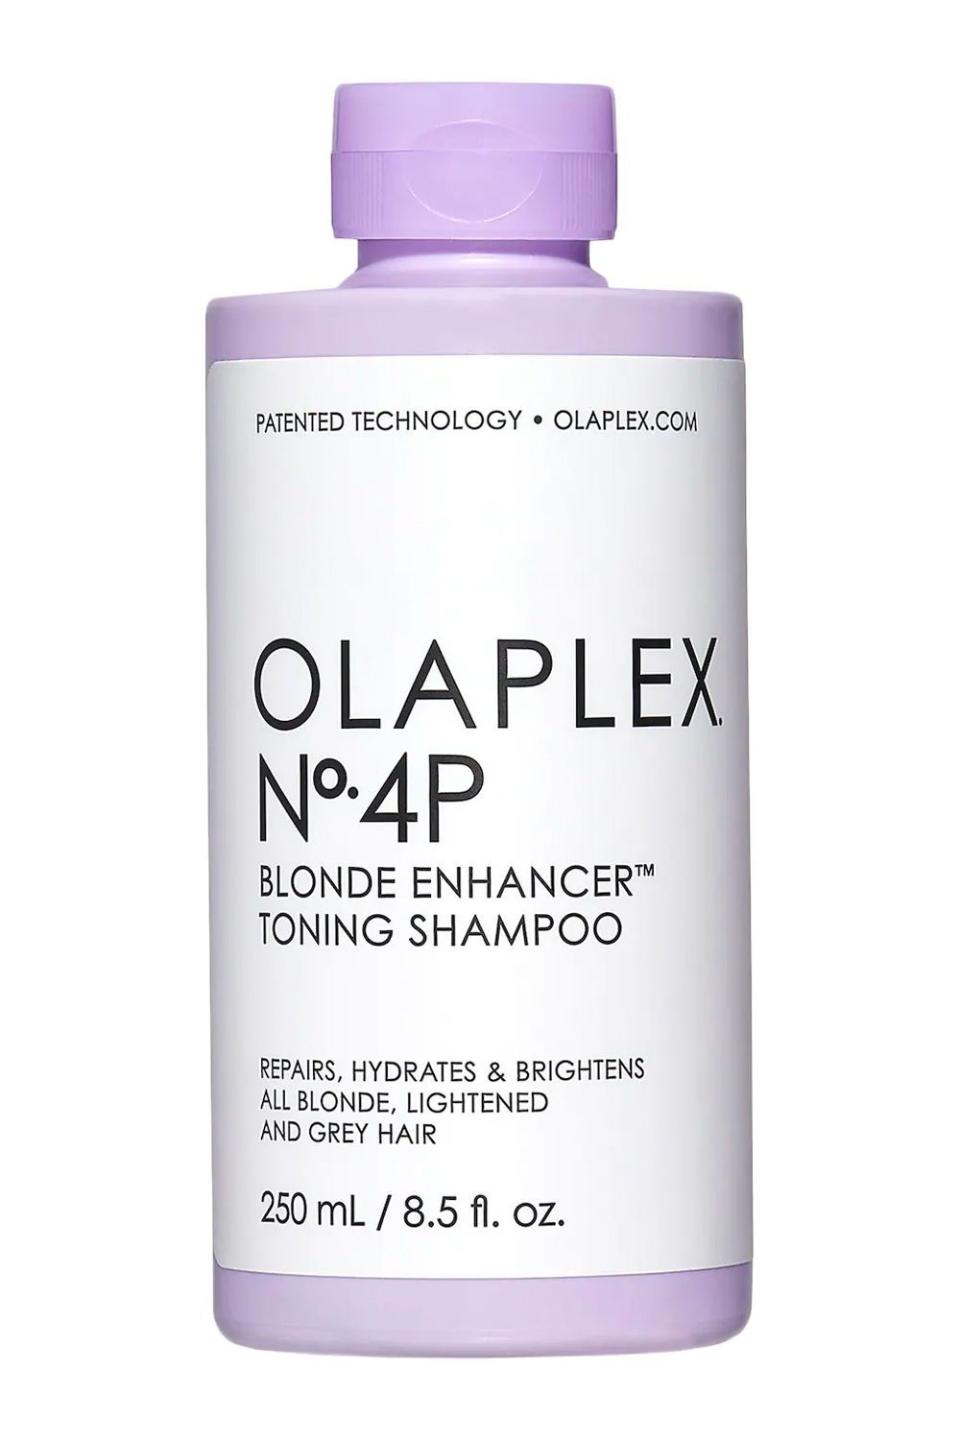 4) Olaplex No. 4P Blonde Enhancer Toning Shampoo